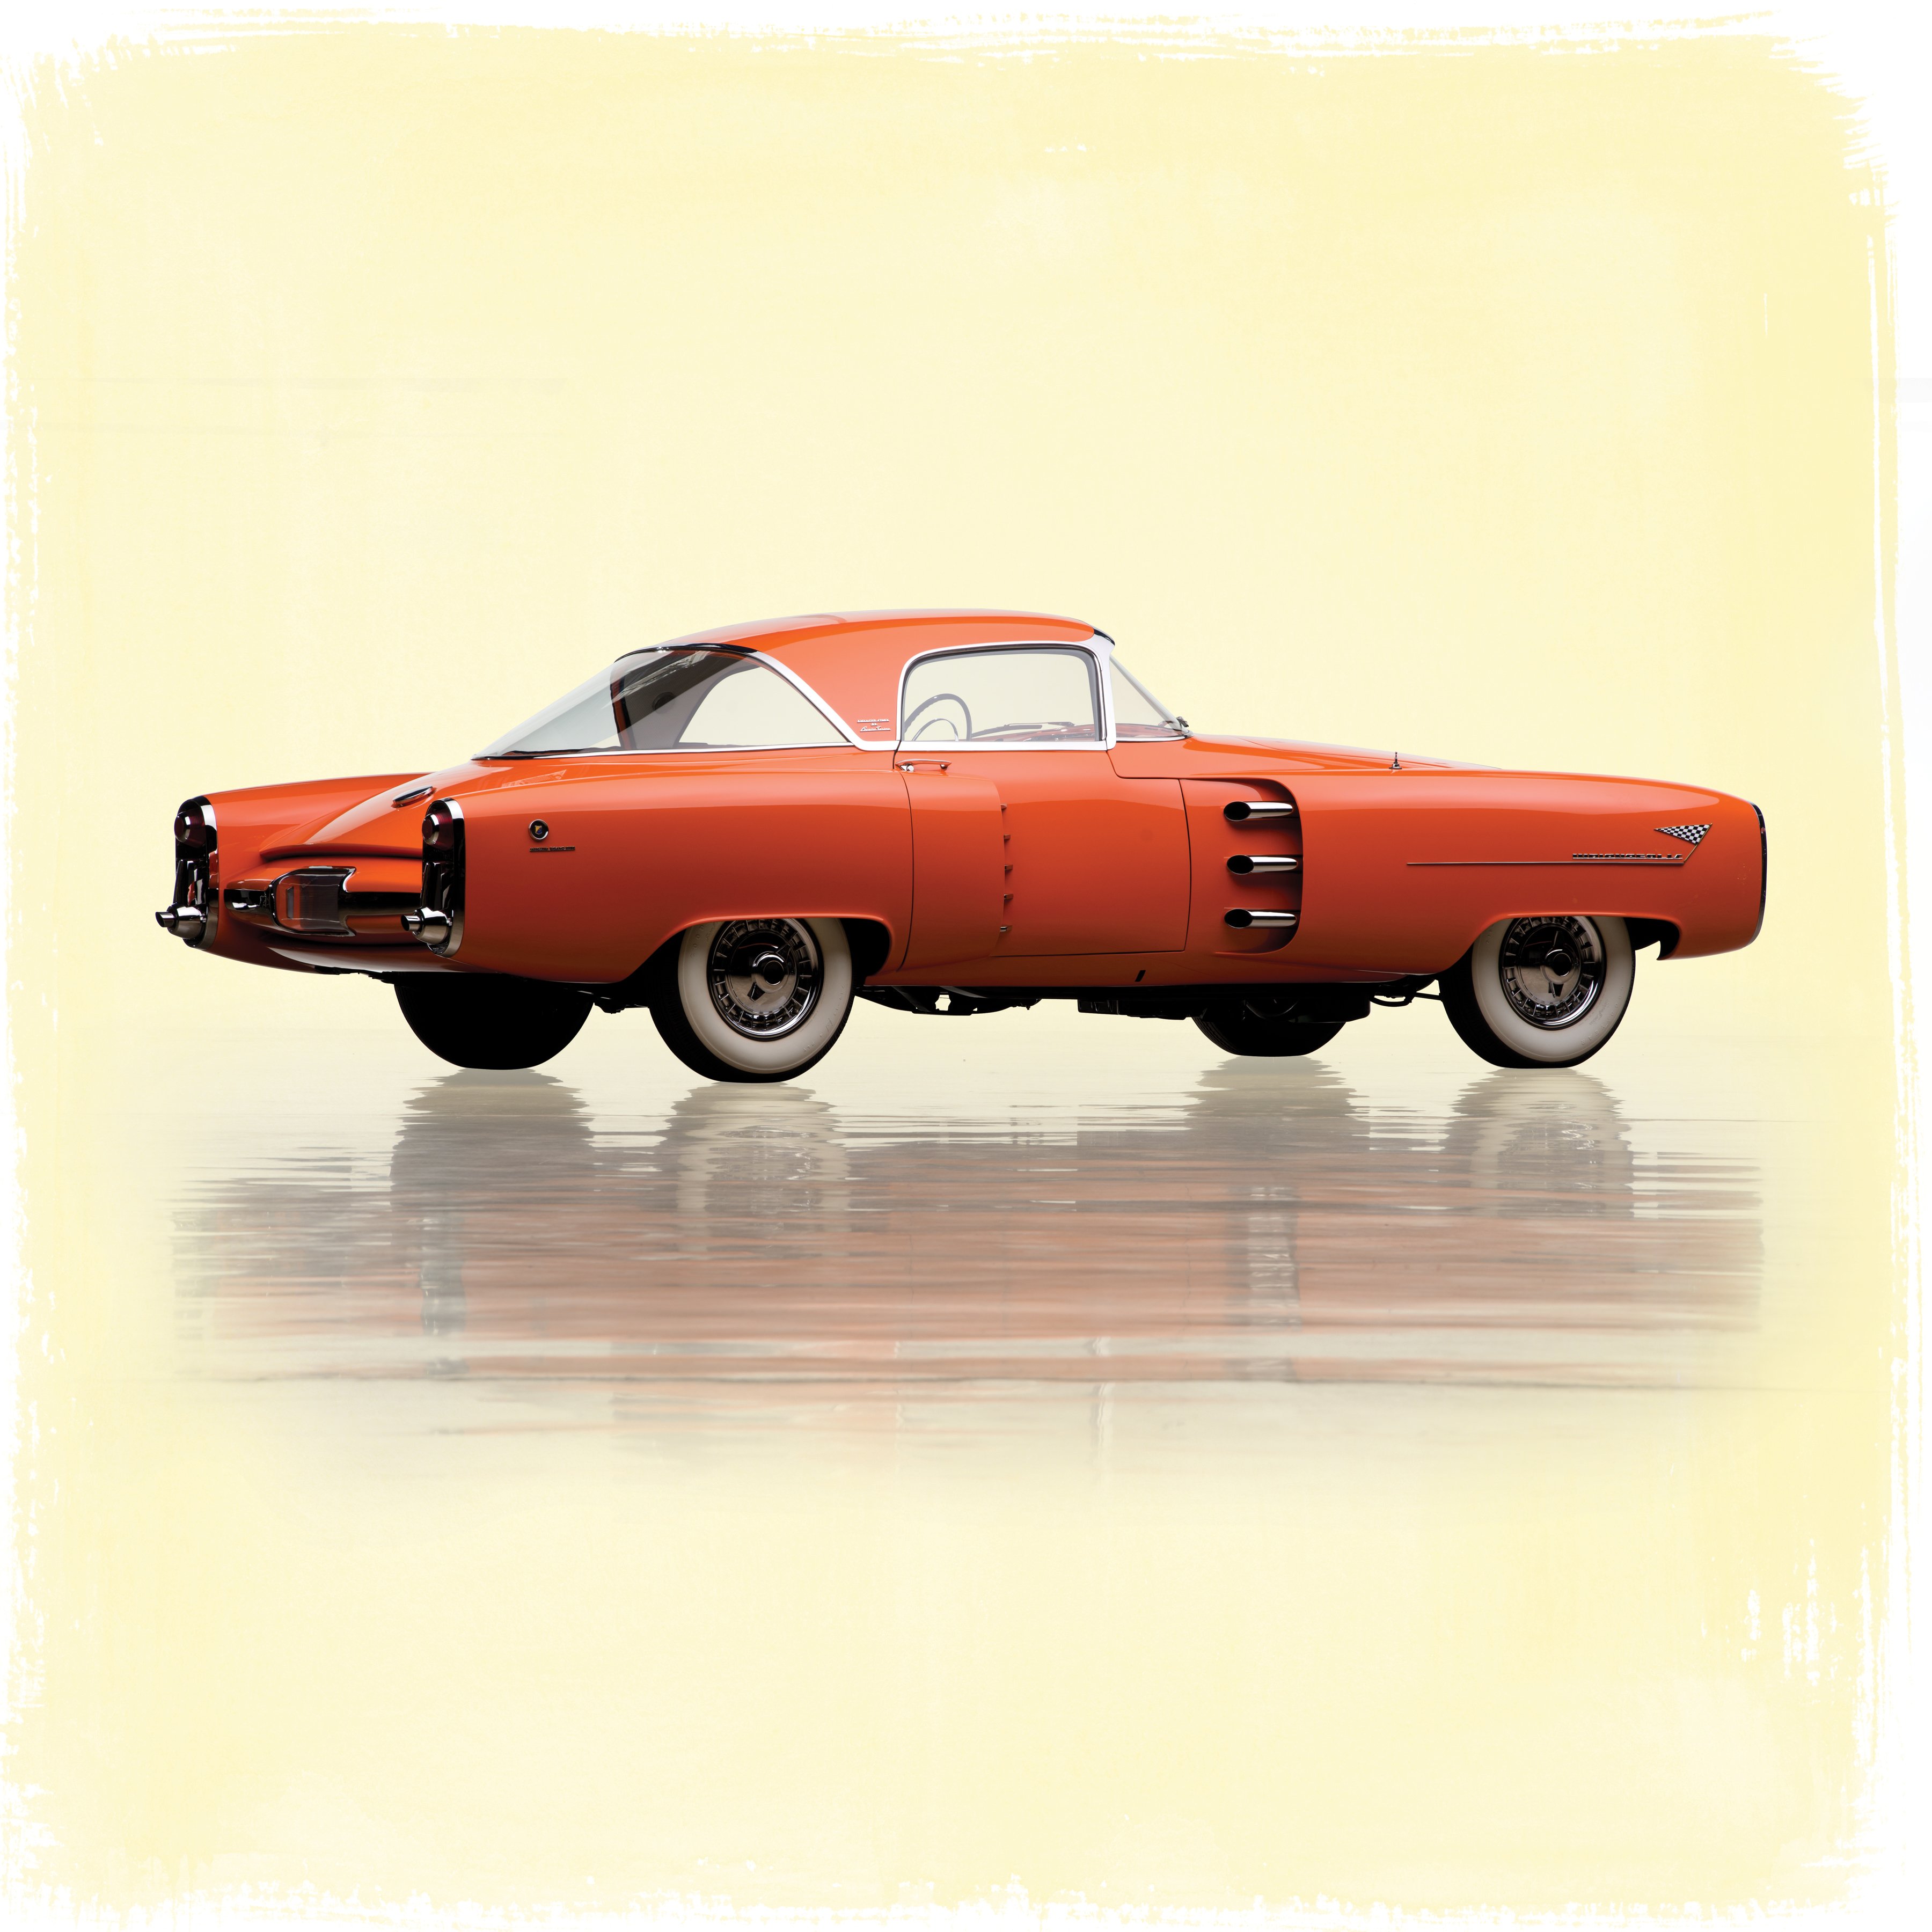 1955, Lincoln, Indianapolis, Concept, Boano, Indy, Retro, Vintage, Luxury, Supercar Wallpaper